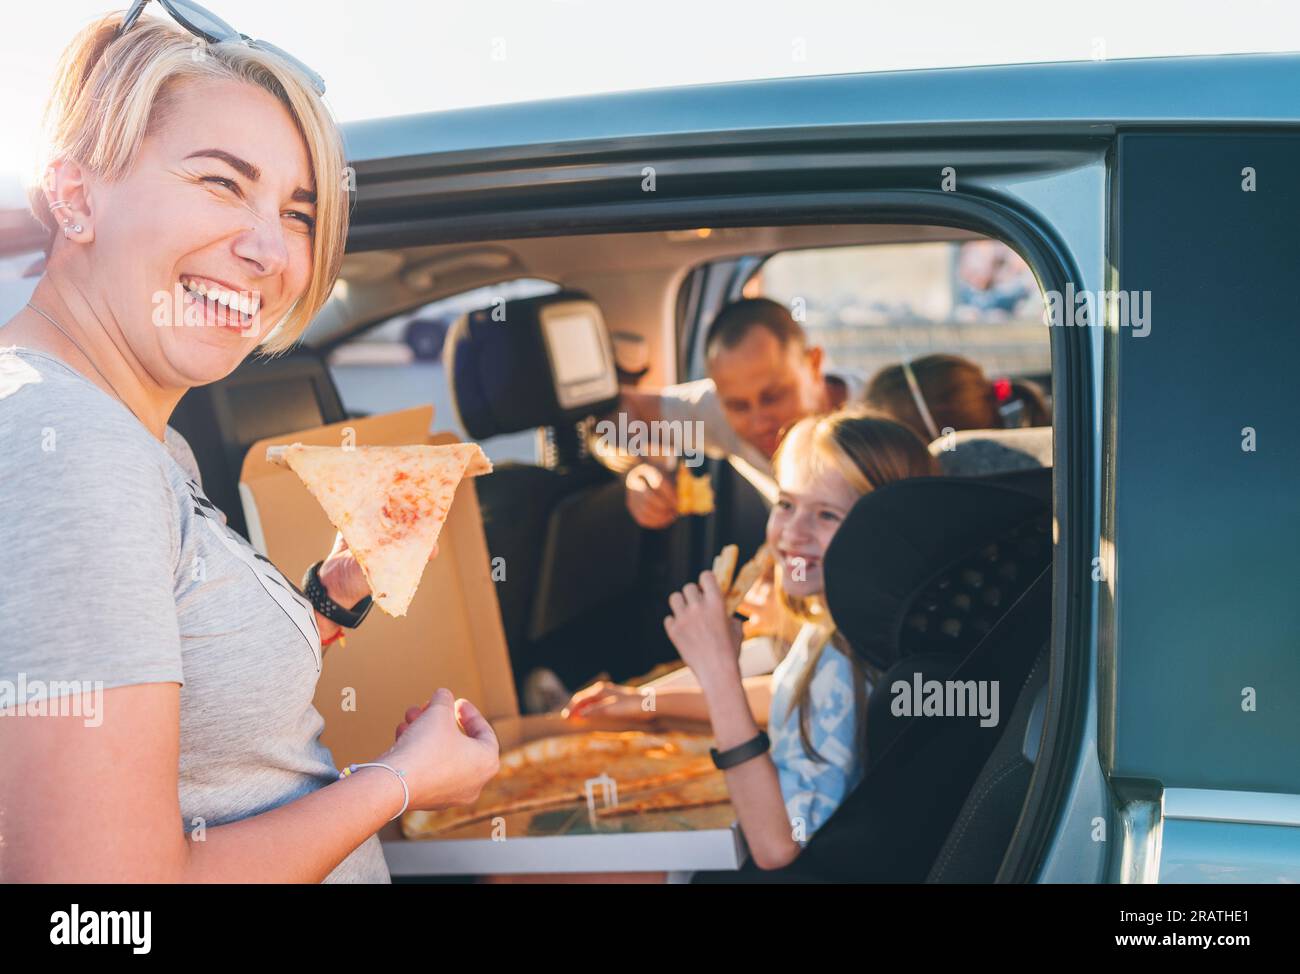 Femme souriante positive avec une tranche de pizza italienne juste cuite pendant que voyage en voiture familiale s'arrête. Heureux moments en famille, enfance, restauration rapide, famille v Banque D'Images